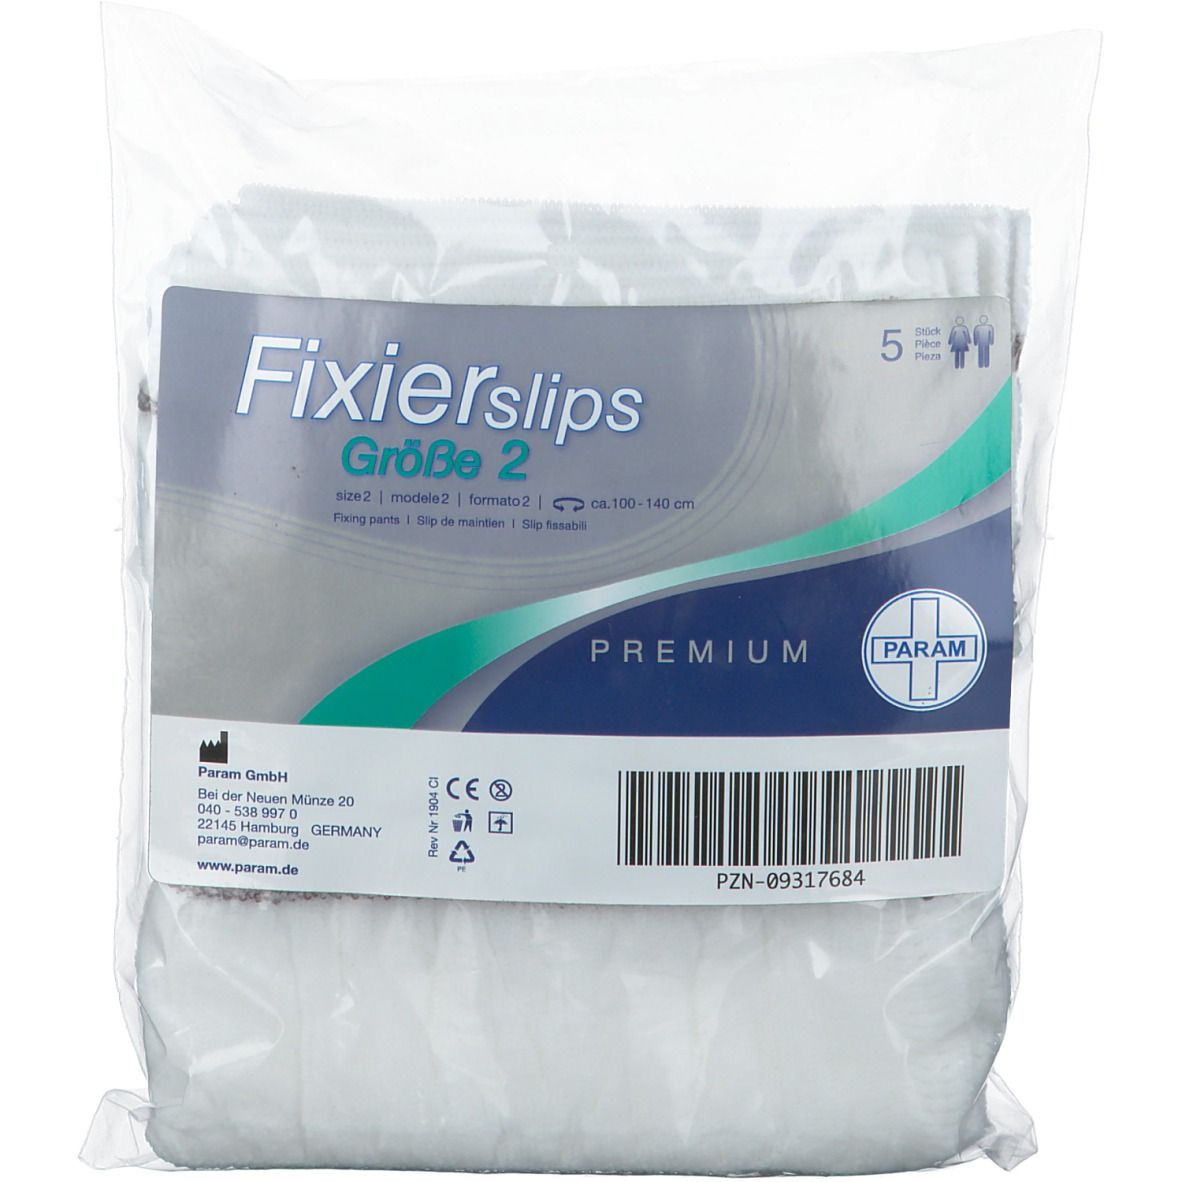 PARAM Fixierslips Premium Größe 2 110 - 140